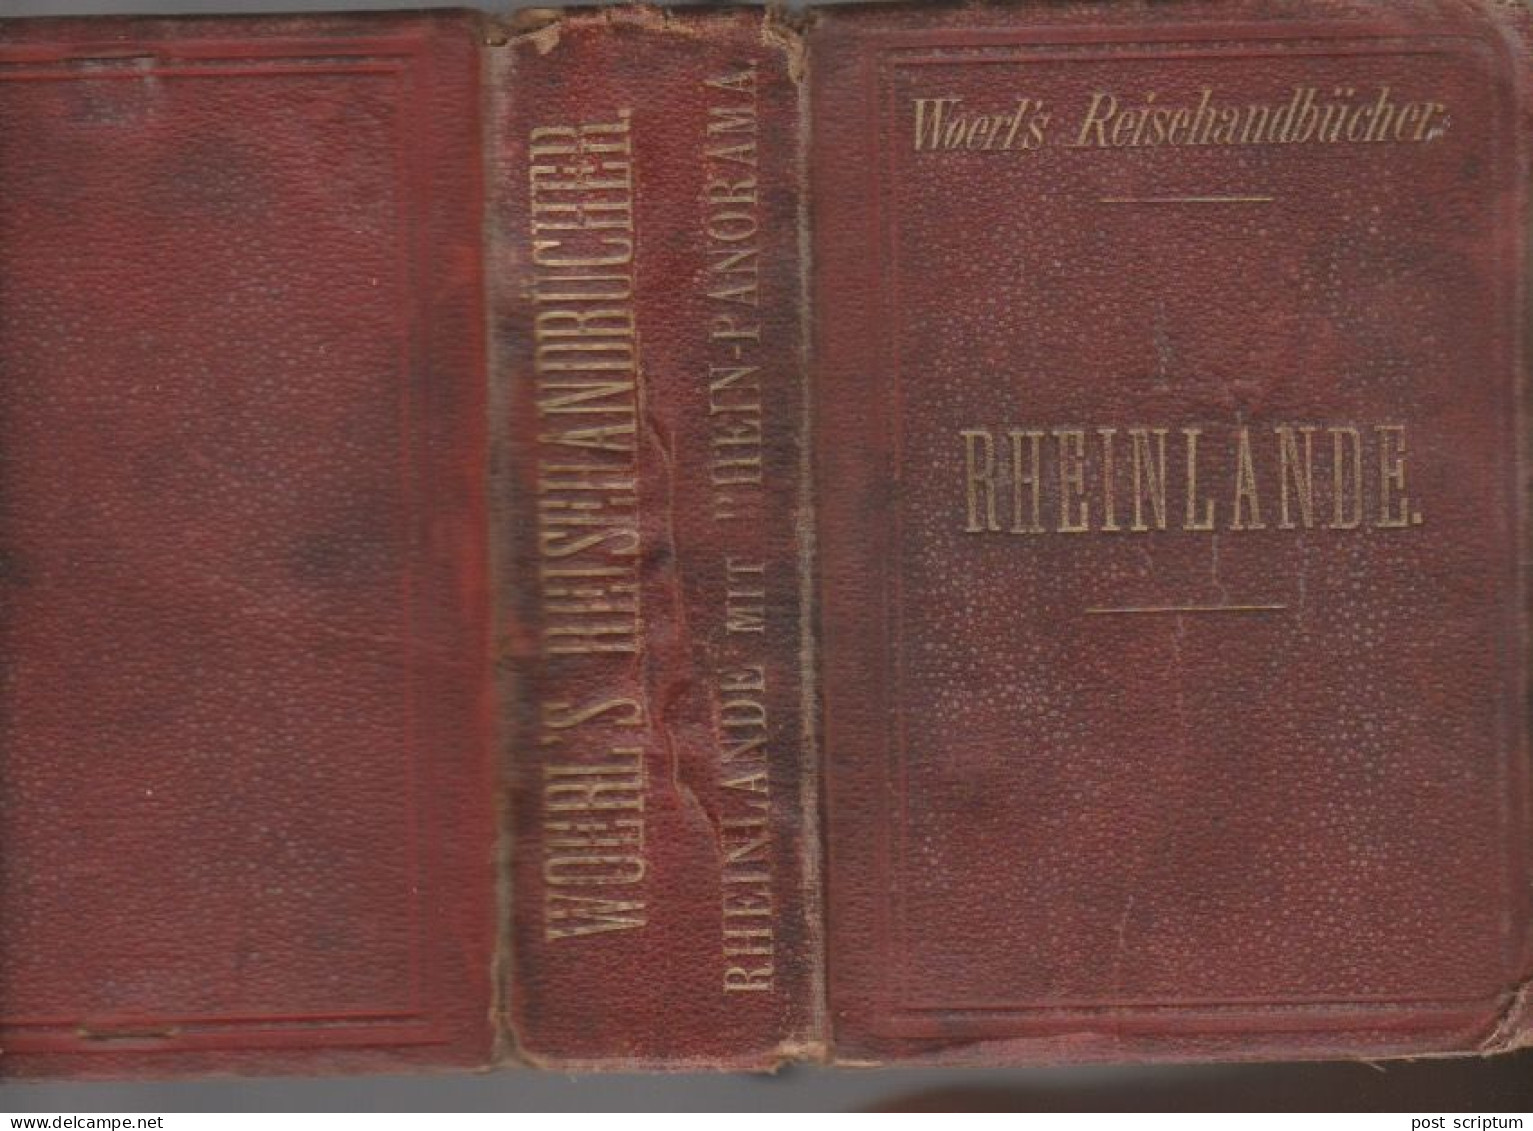 Livre - Rheinlände Wohrl's Reisenhandbücher  1887 - Guide Touristique En Allemand - Libri Vecchi E Da Collezione